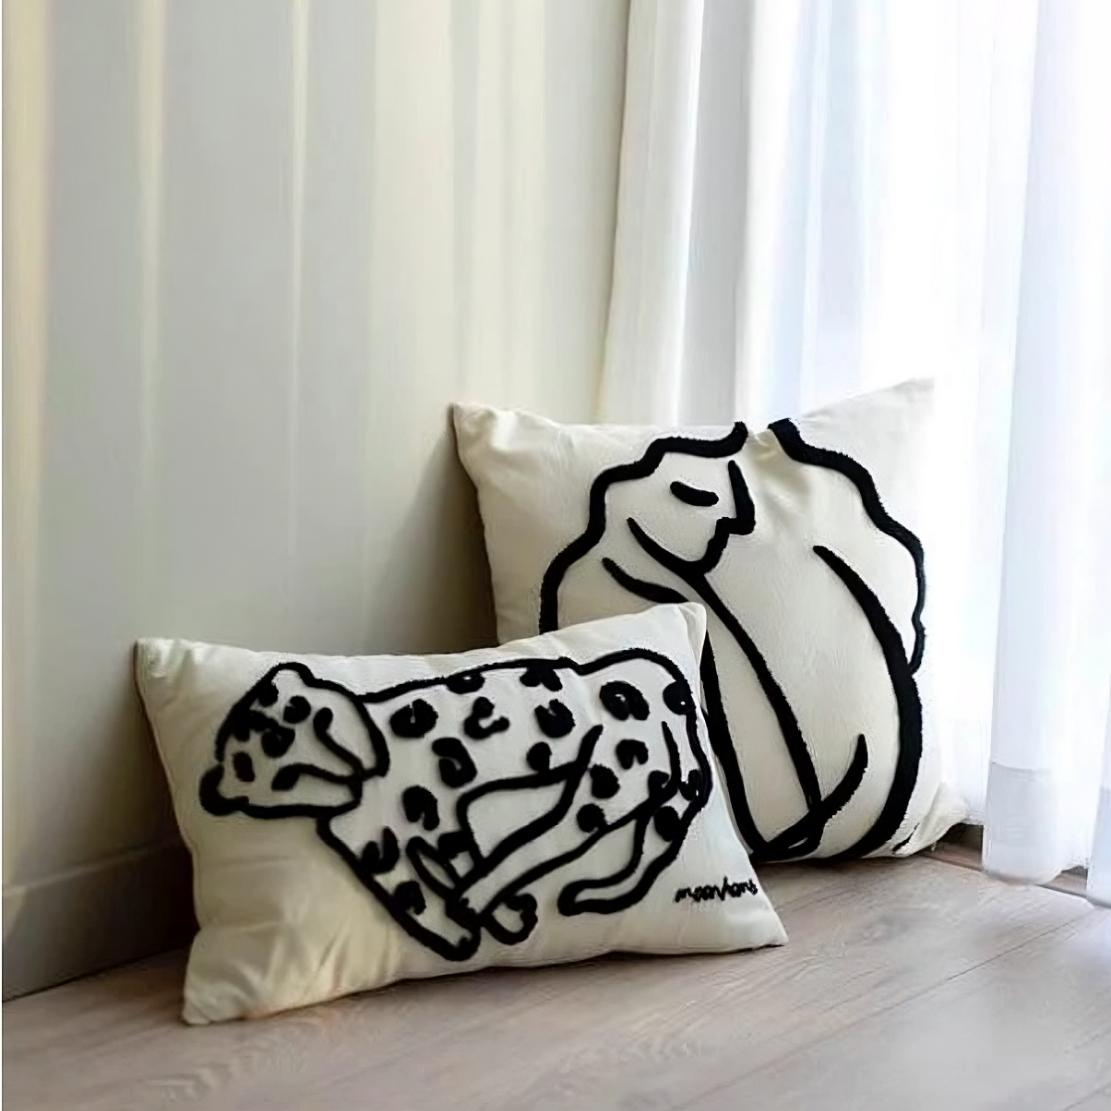 Black & white line decorative throw pillows